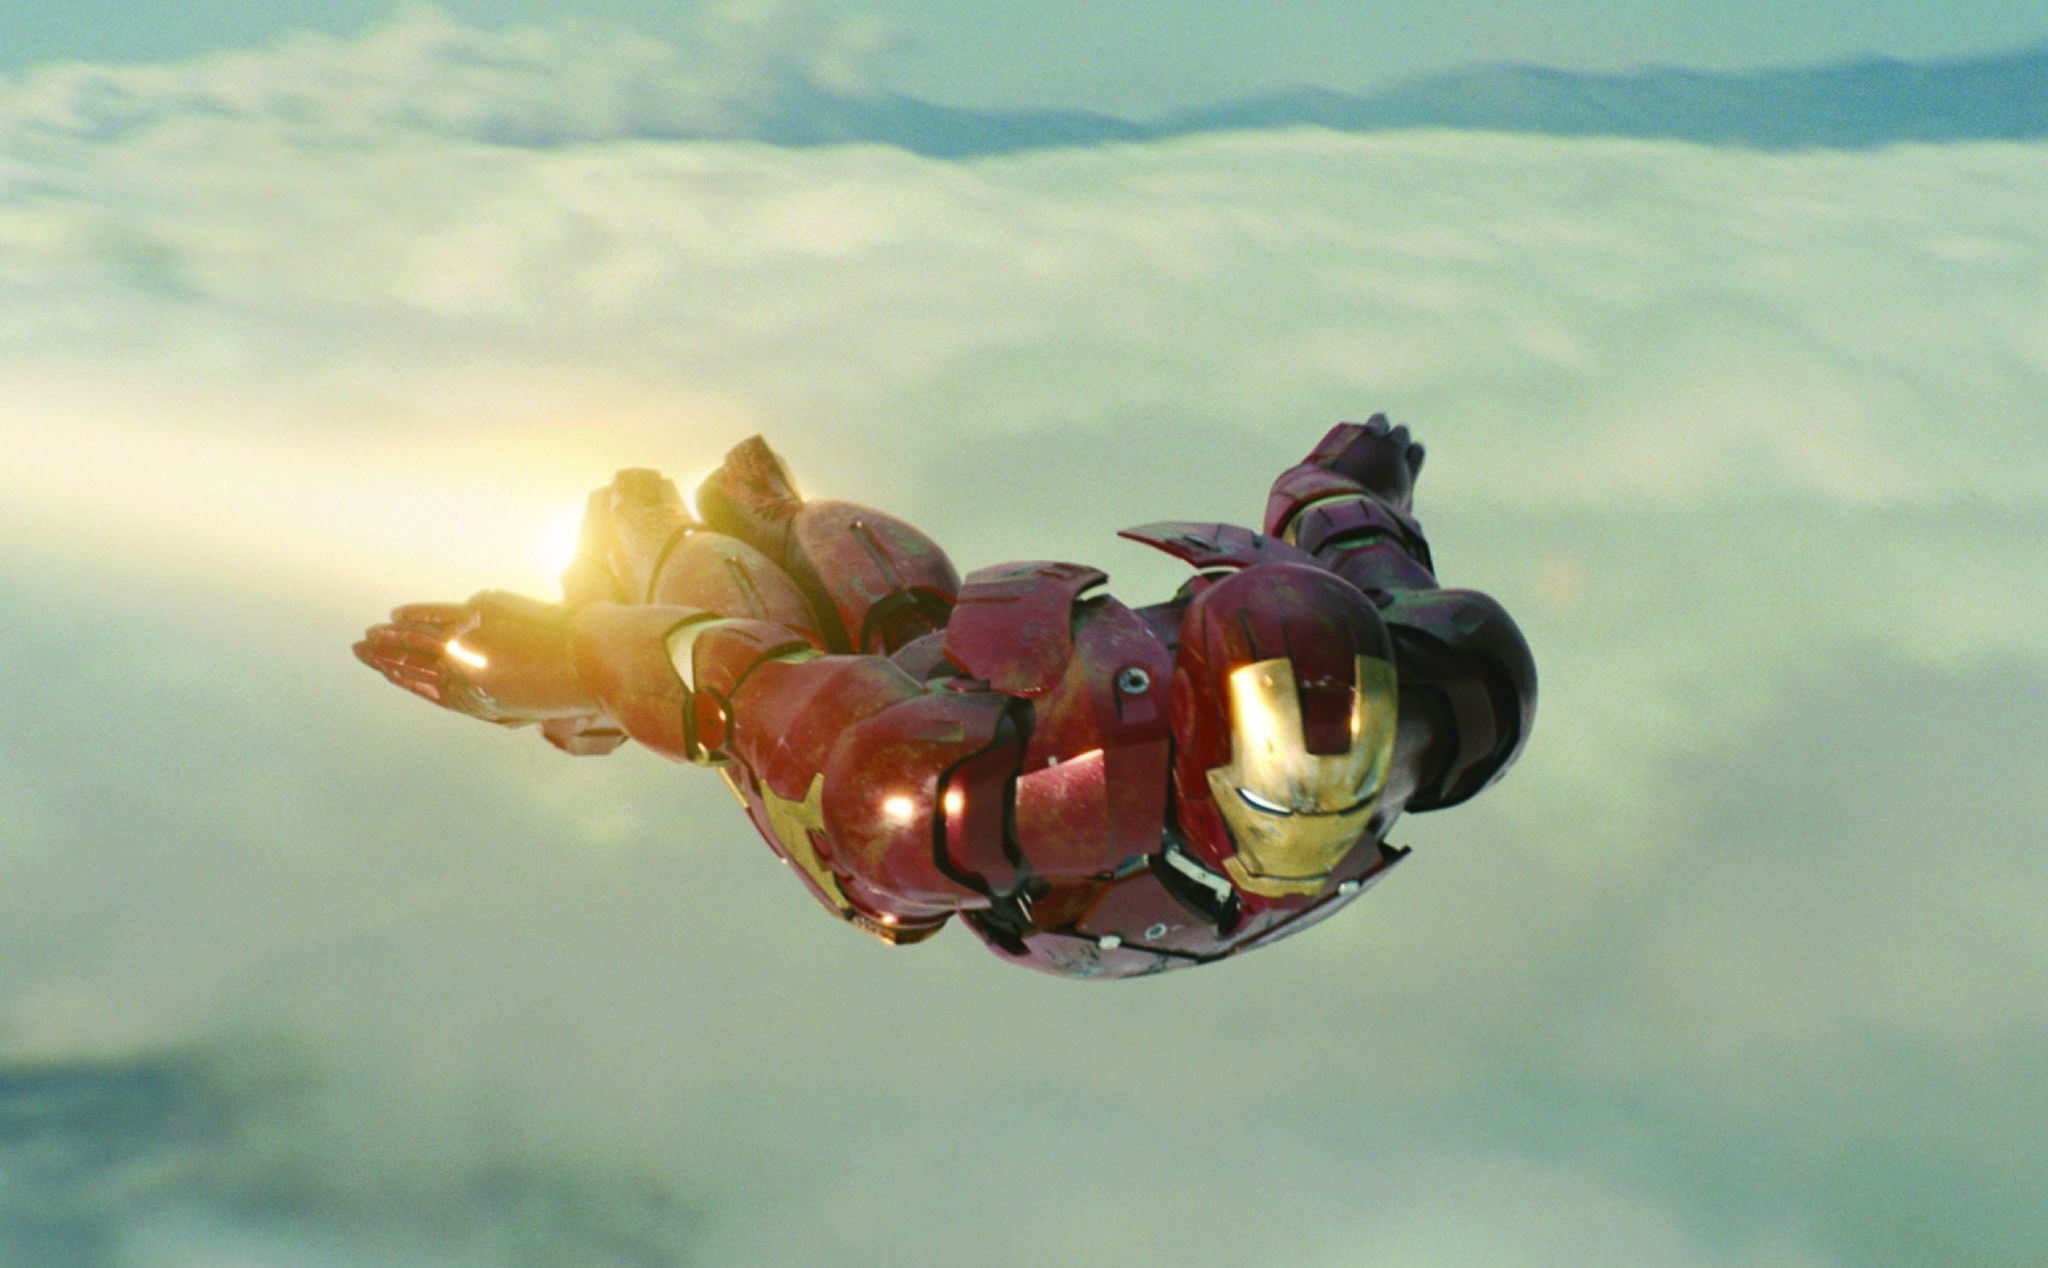 Tìm hiểu về vũ khí và canh bạc của siêu anh hùng Iron Man với bộ sưu tập hình ảnh đầy mê hoặc này. Hãy cùng khám phá các chi tiết thú vị và điểm nhấn của bộ phim để hiểu sâu hơn về cốt truyện và các nhân vật trong phim.